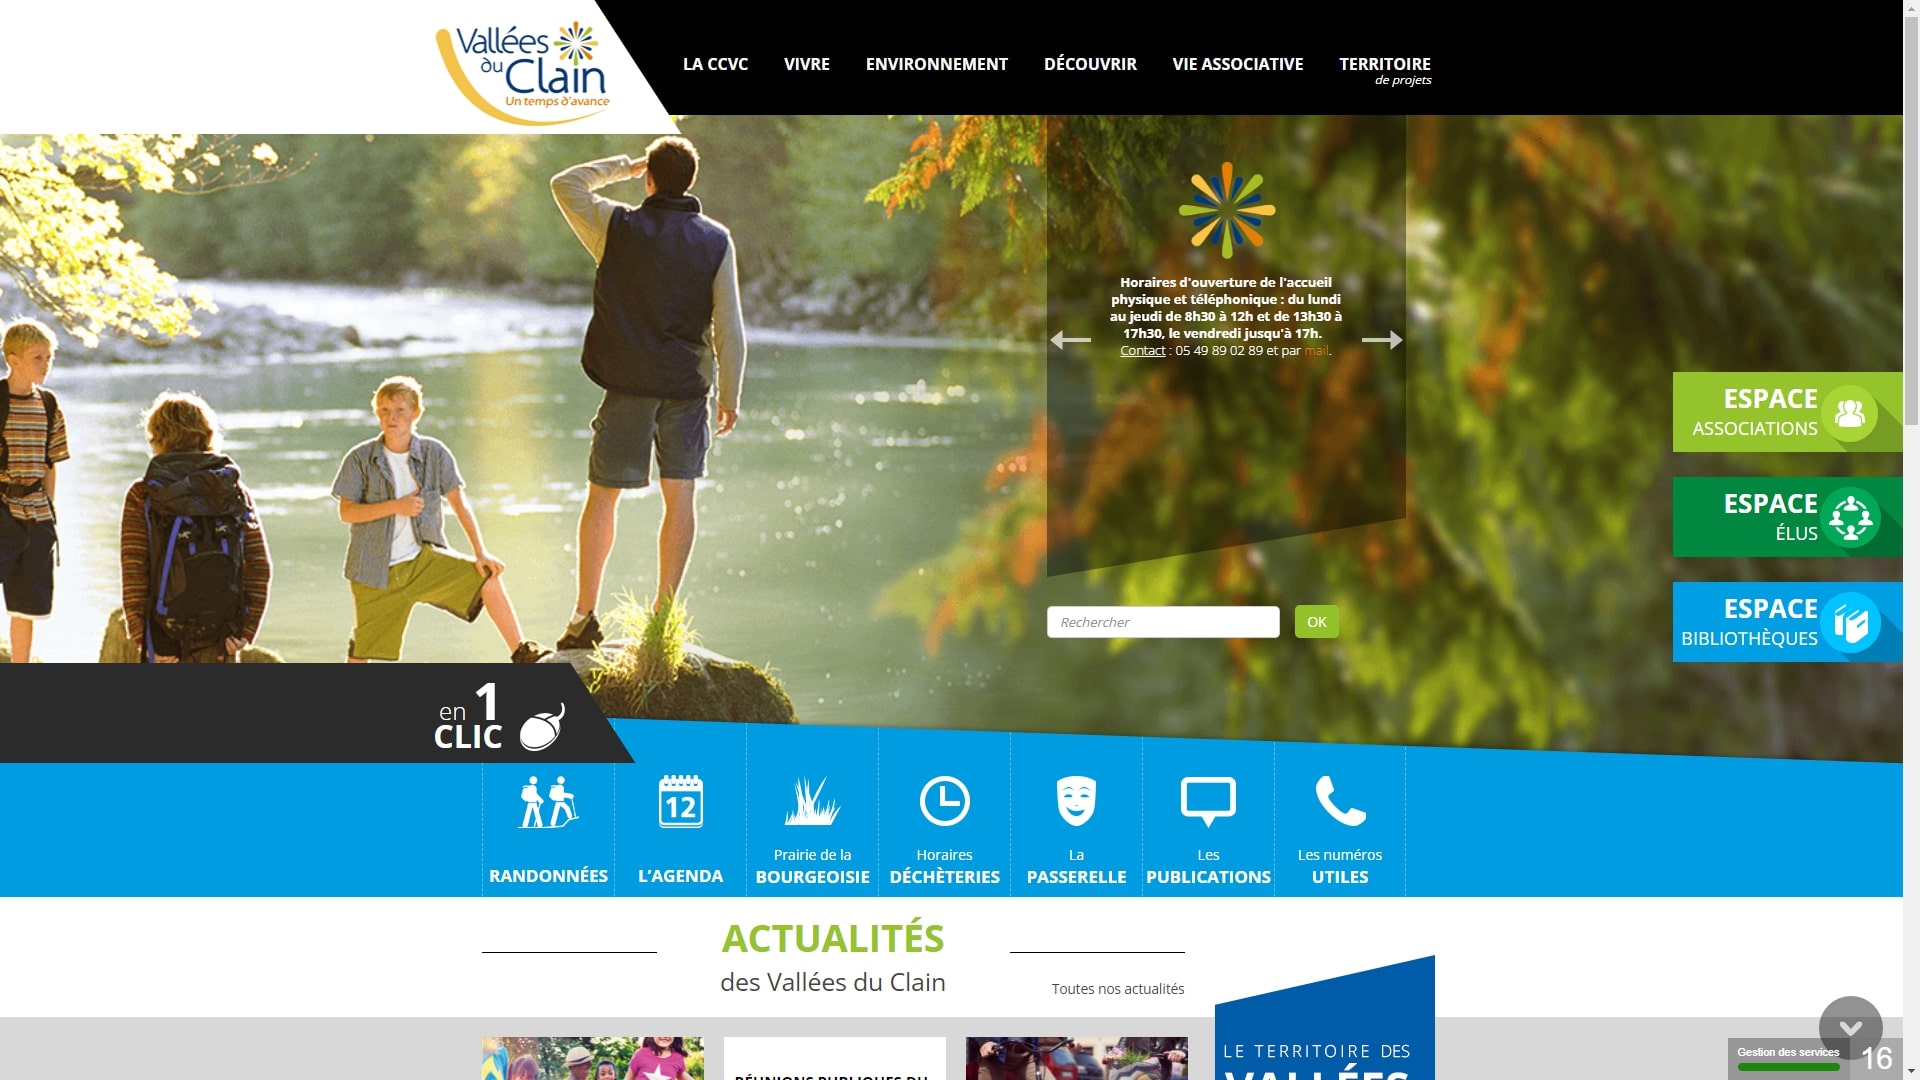 En-tête du site internet de la Communauté de communes des Vallées du Clain